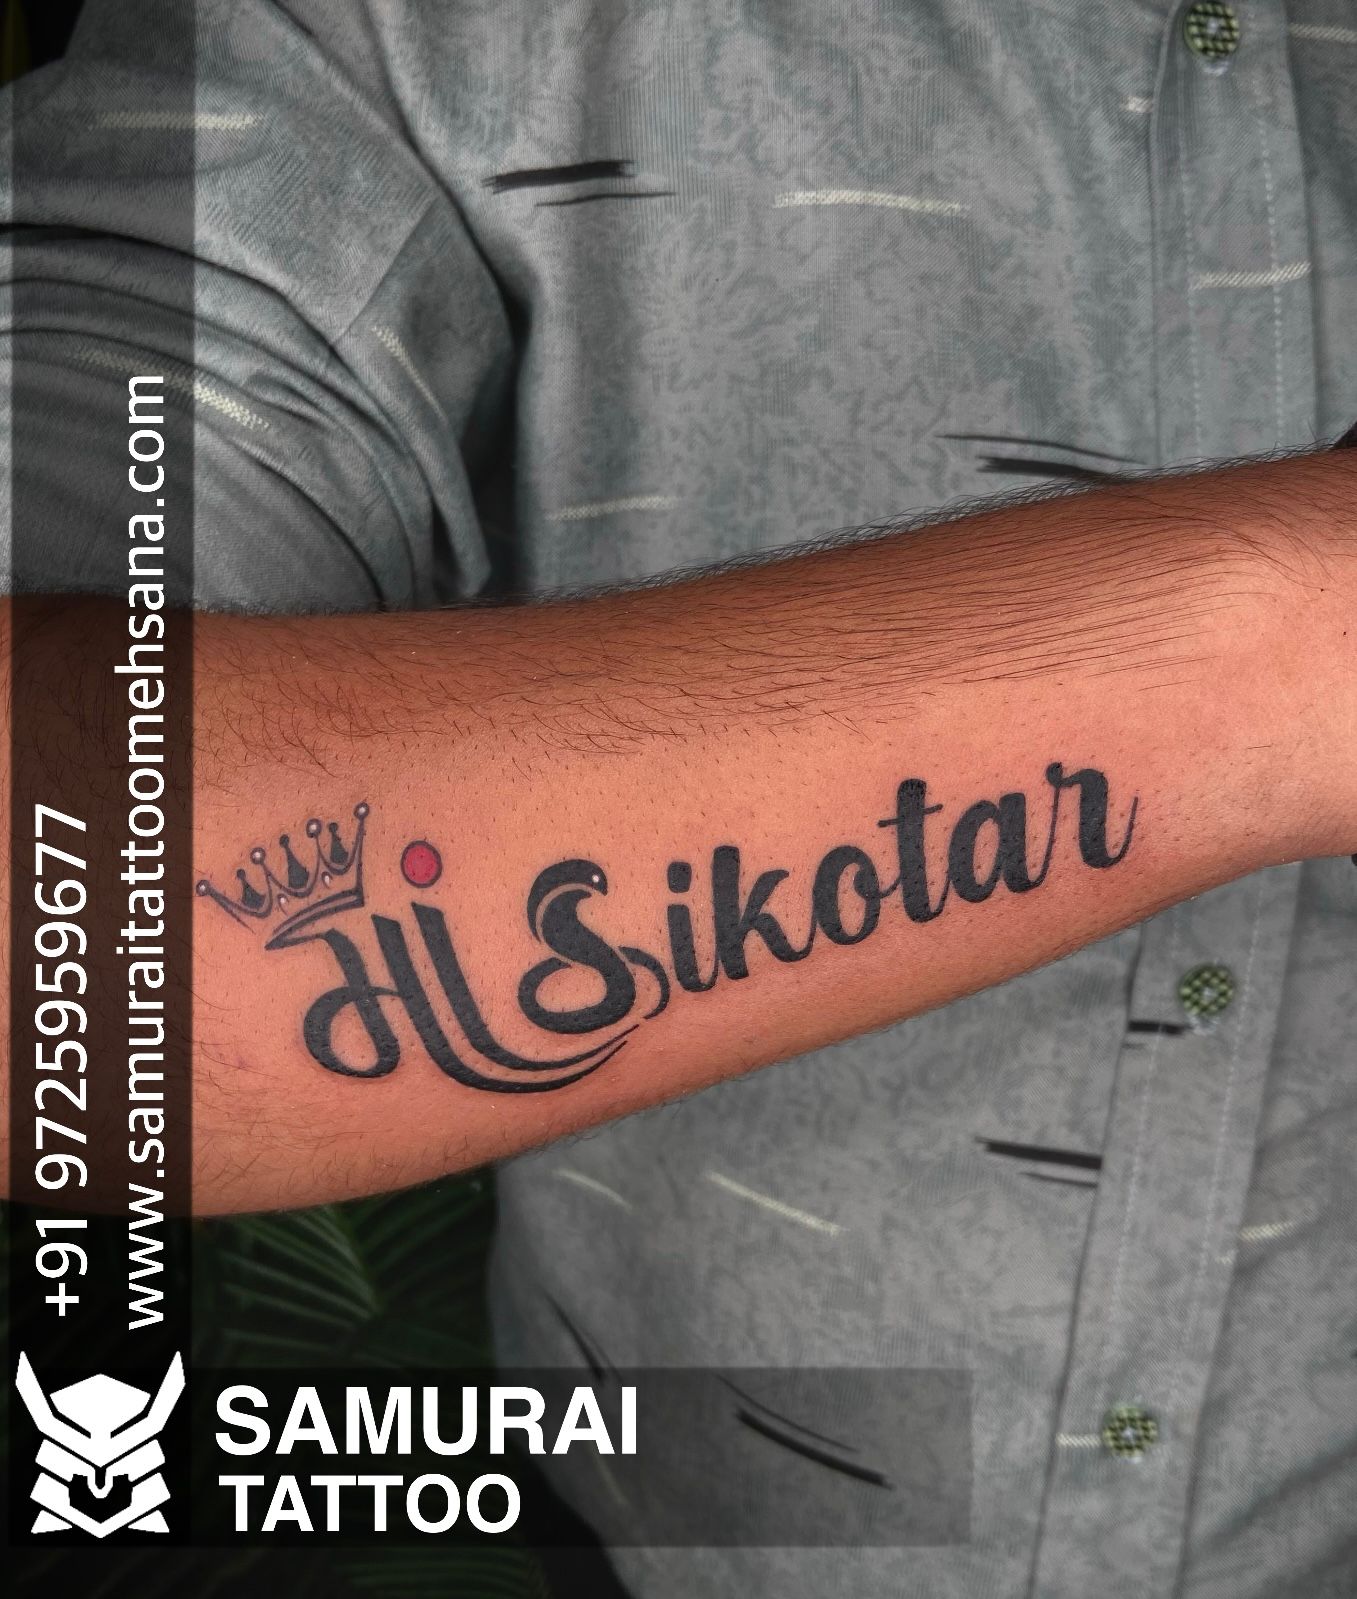 Sikotar tattoo by sachin sharma  Tattoos Tattoo quotes Jesus fish tattoo